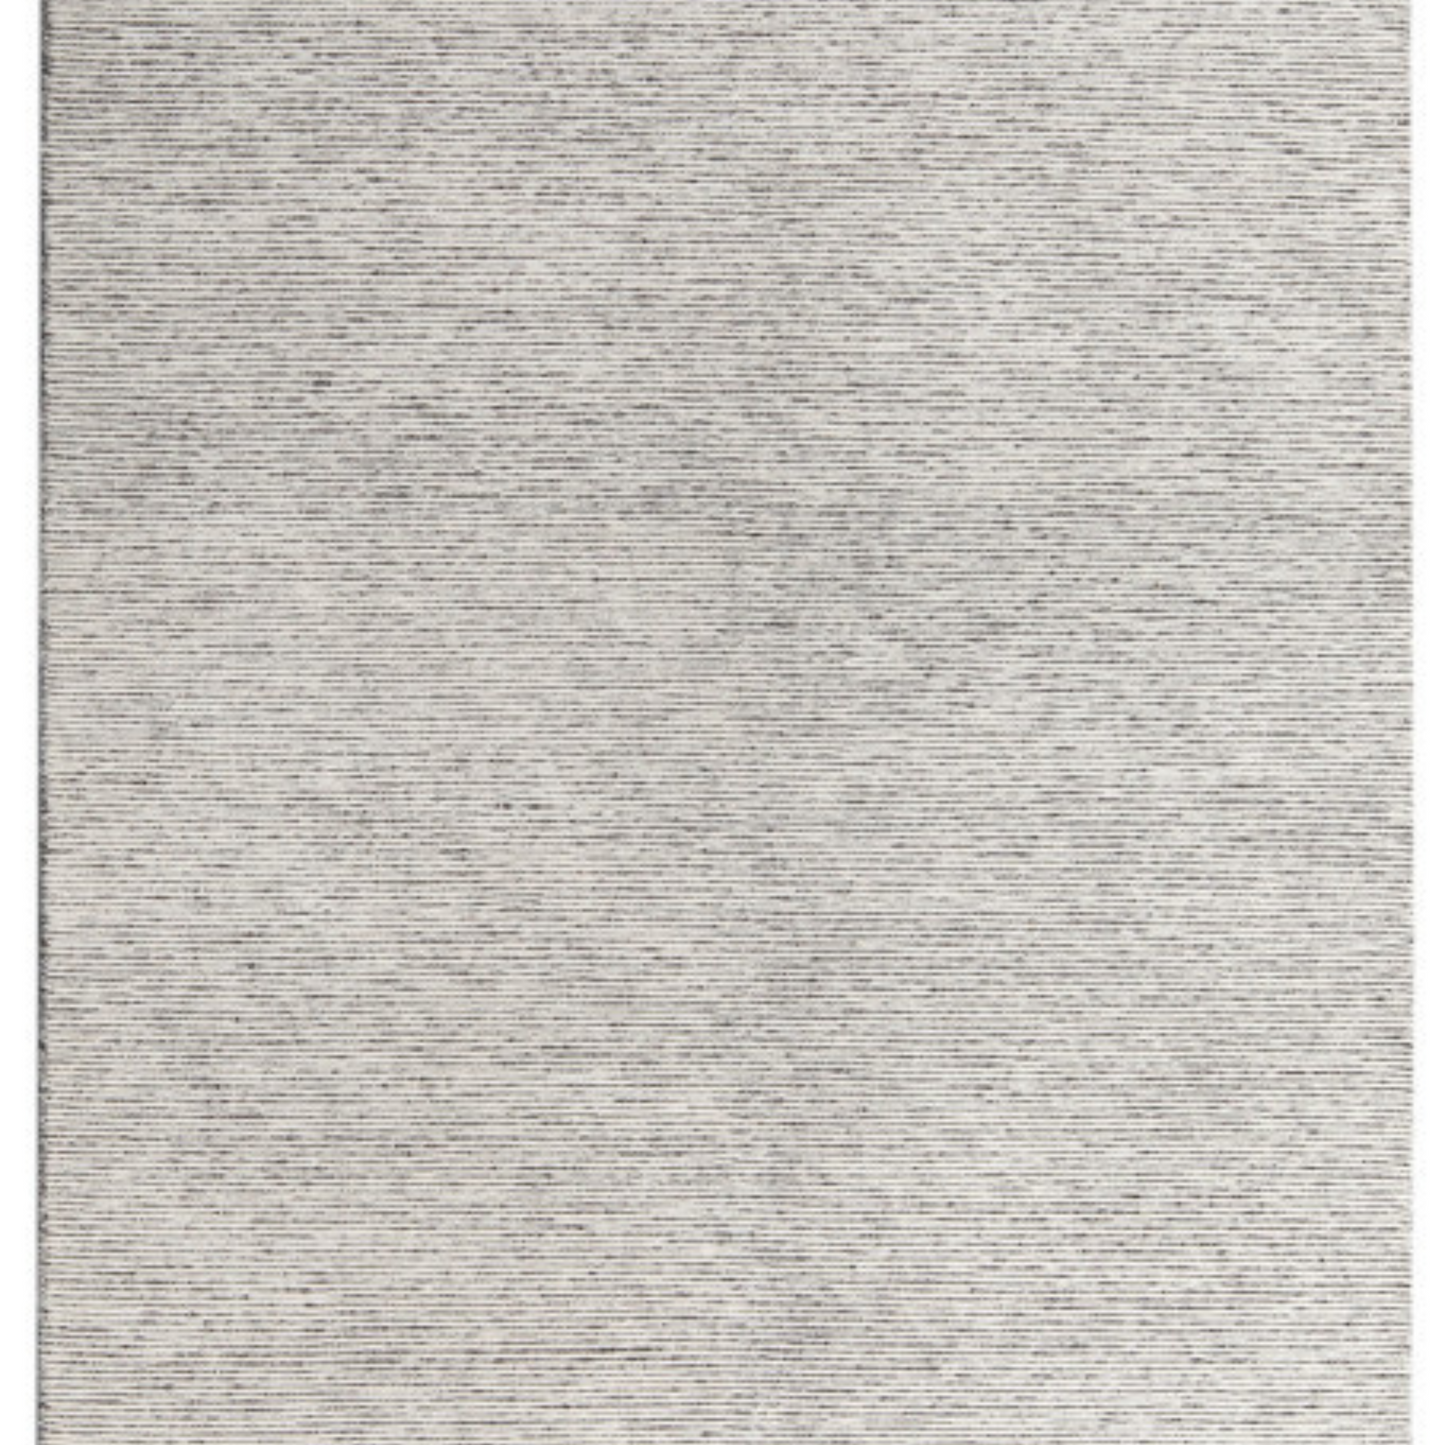 Pandora Rug - Natural Grey 200cm x 300cm